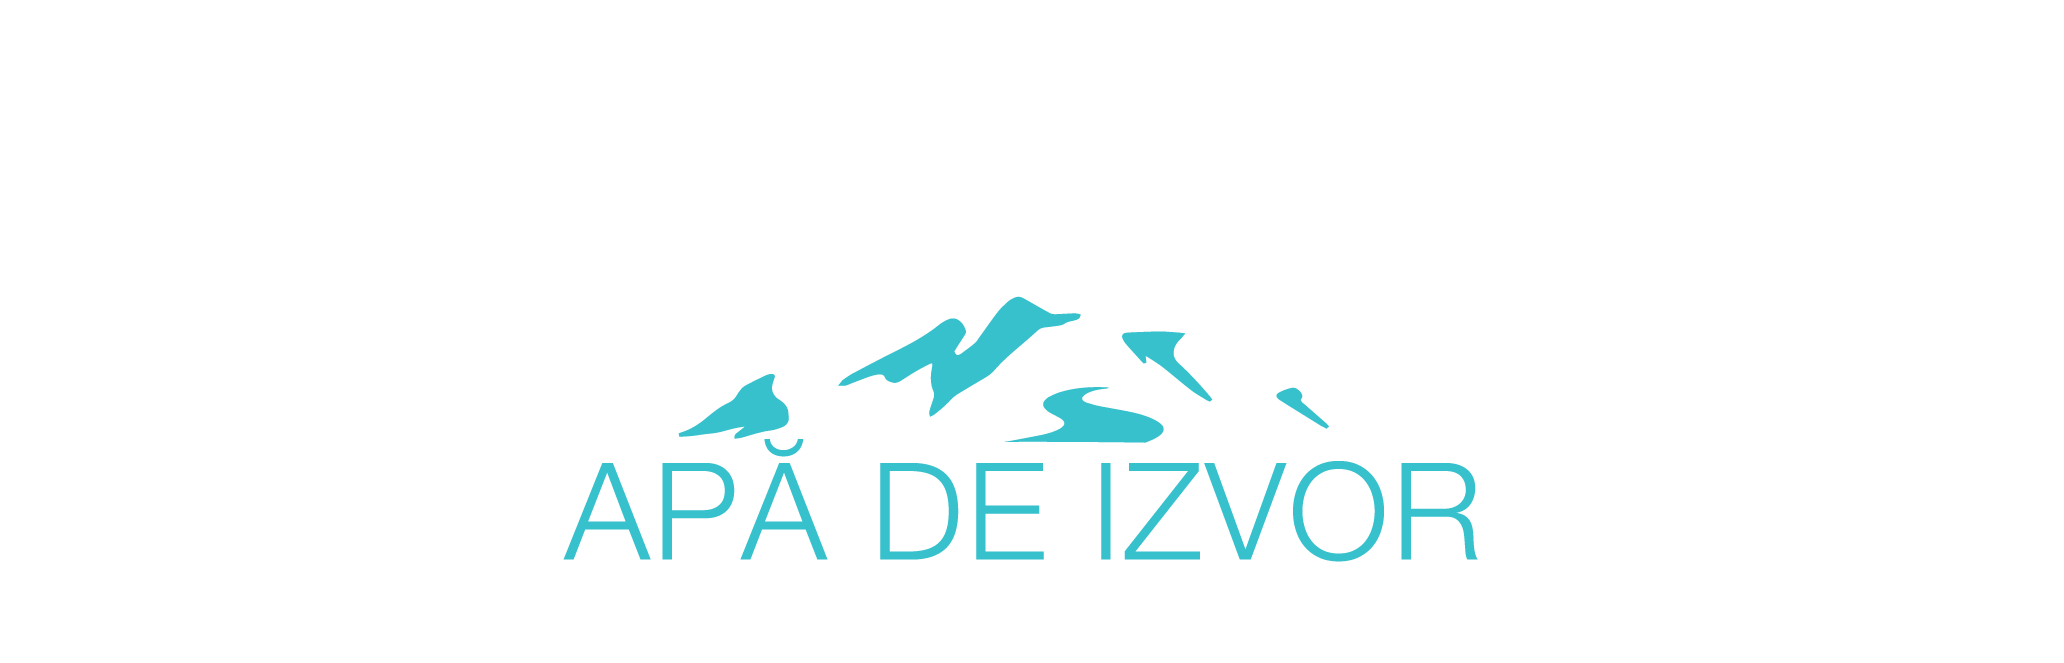 3. Montana - logo